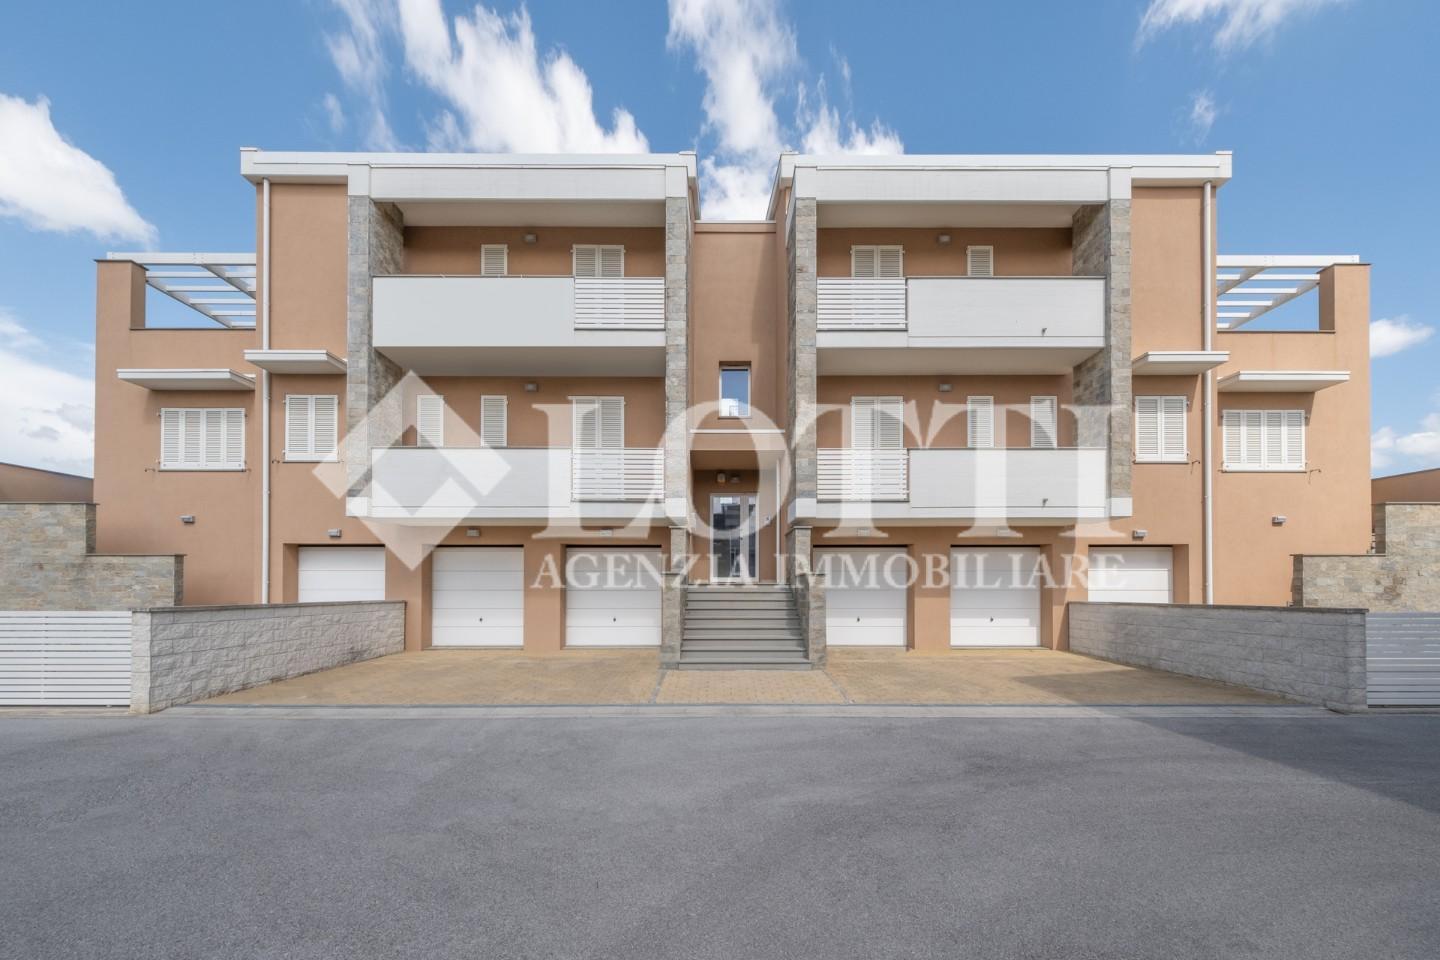 Apartment for sale in La Borra, Pontedera (PI)